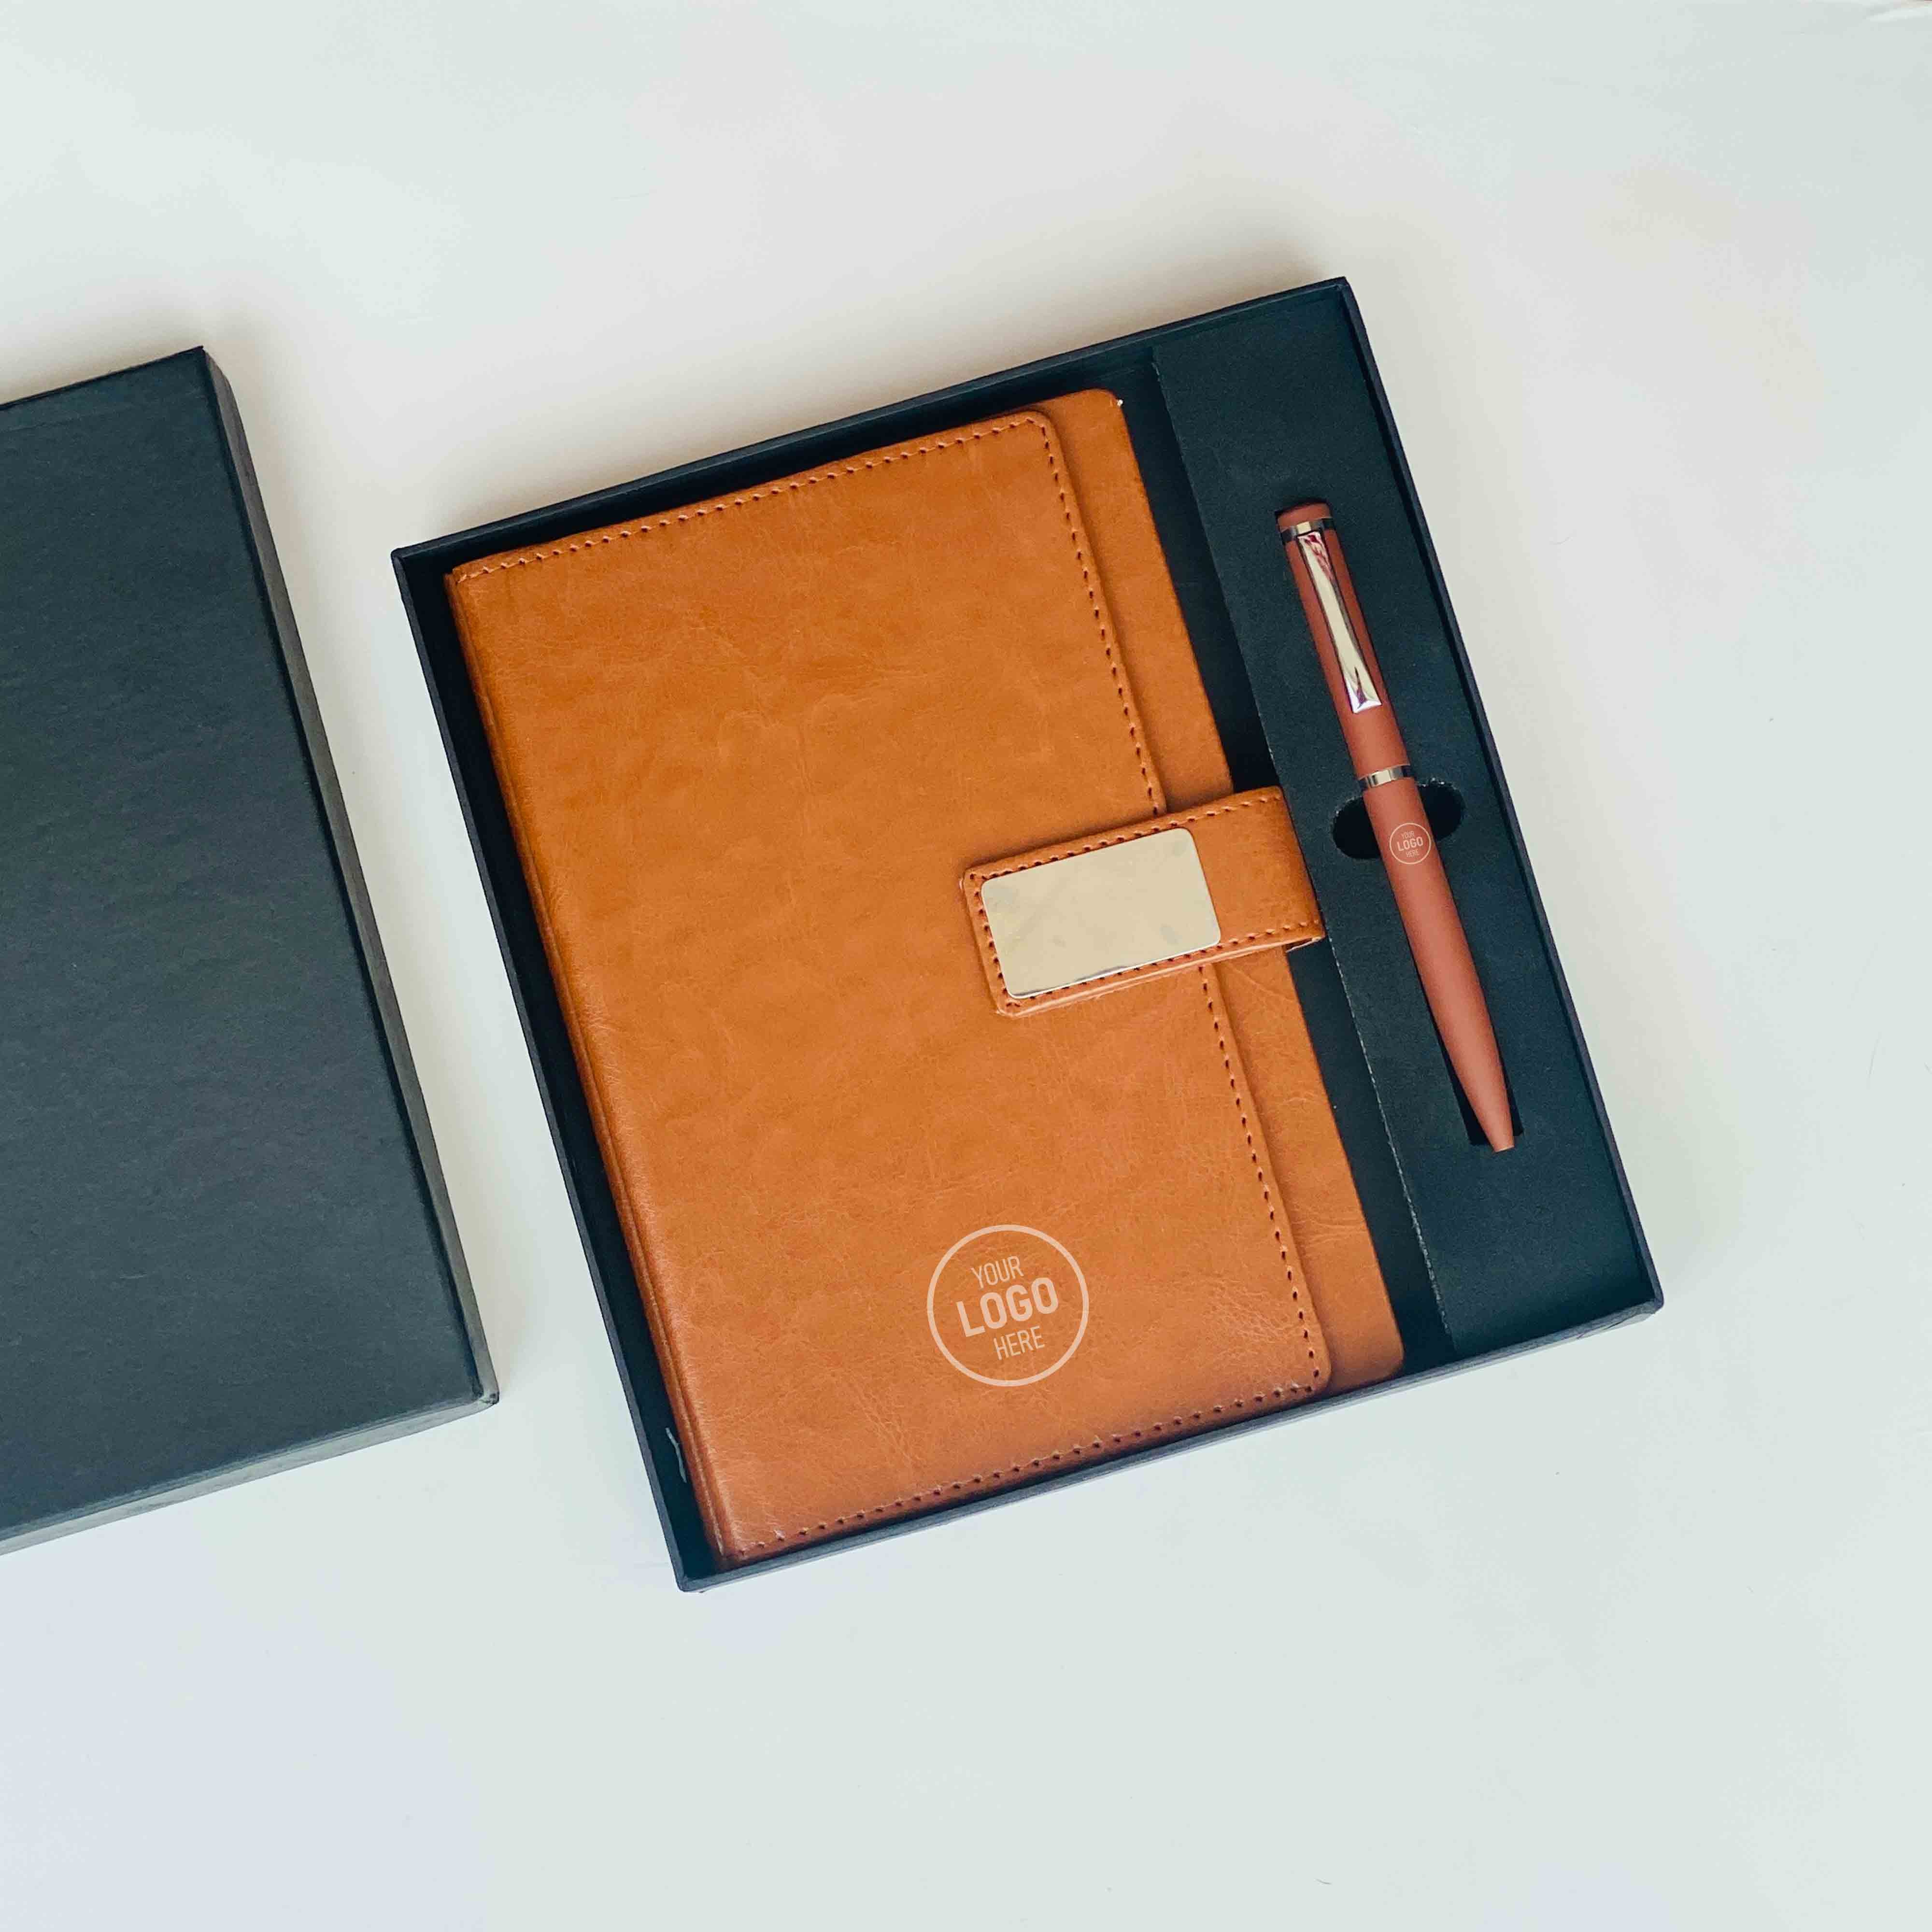 Corporate Gift With NotePad & Pen - Orbiz Creativez